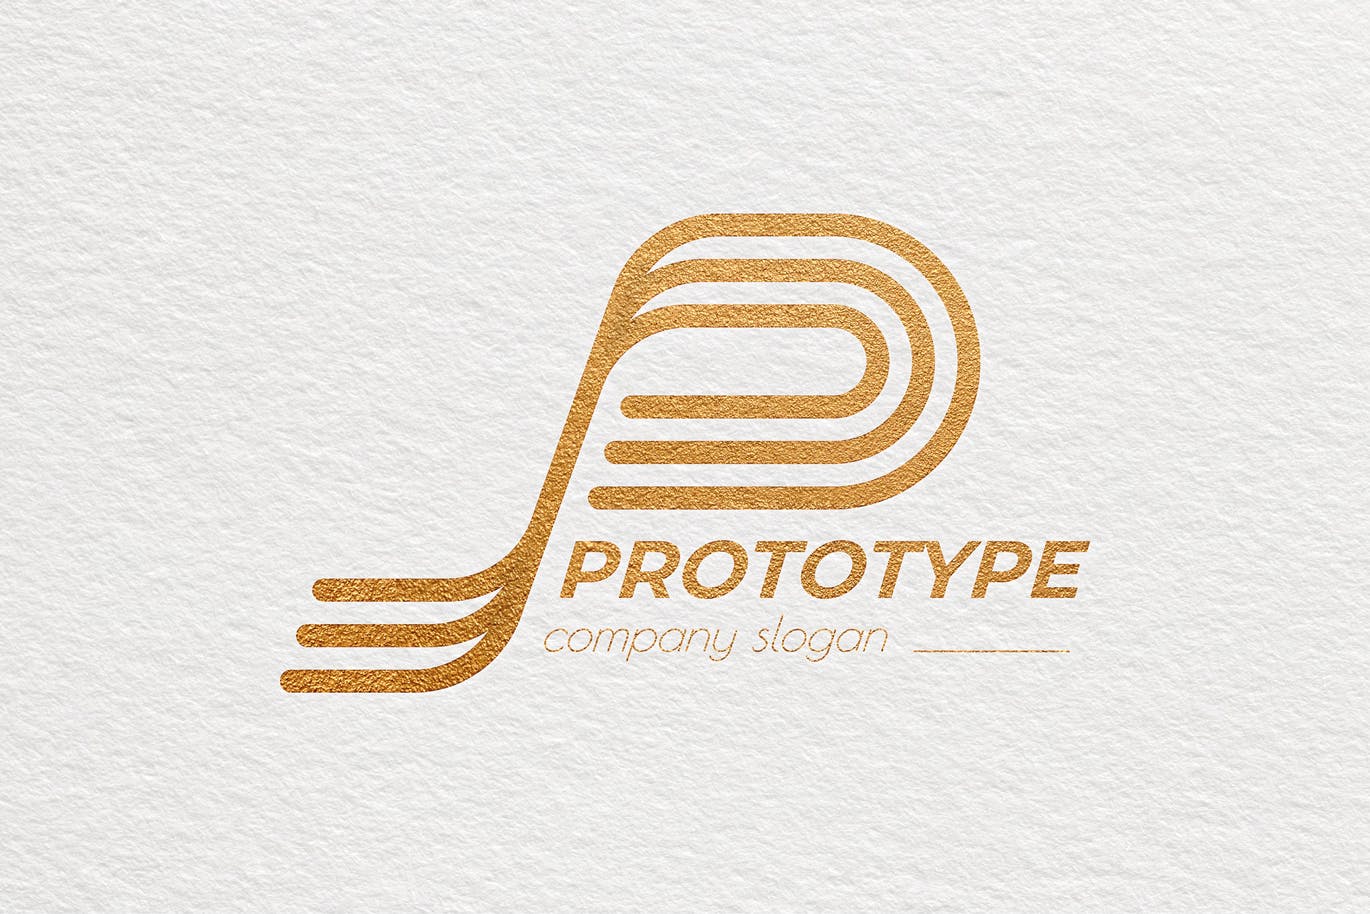 原型设计主题创意图形Logo设计非凡图库精选模板 Prototype Creative Logo Template插图(3)